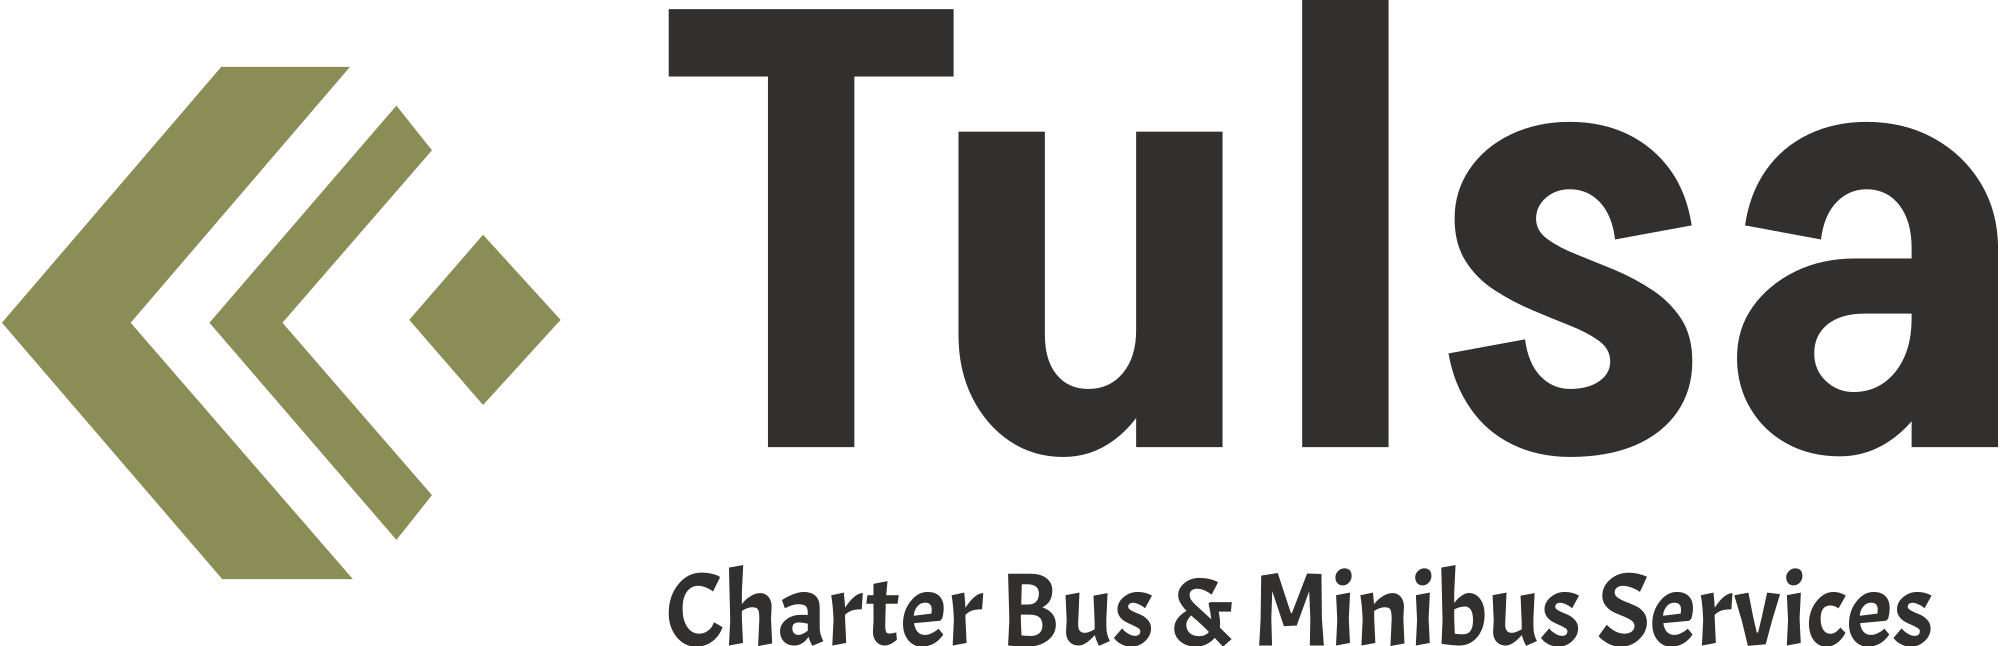 Charter Bus Company Tulsa logo